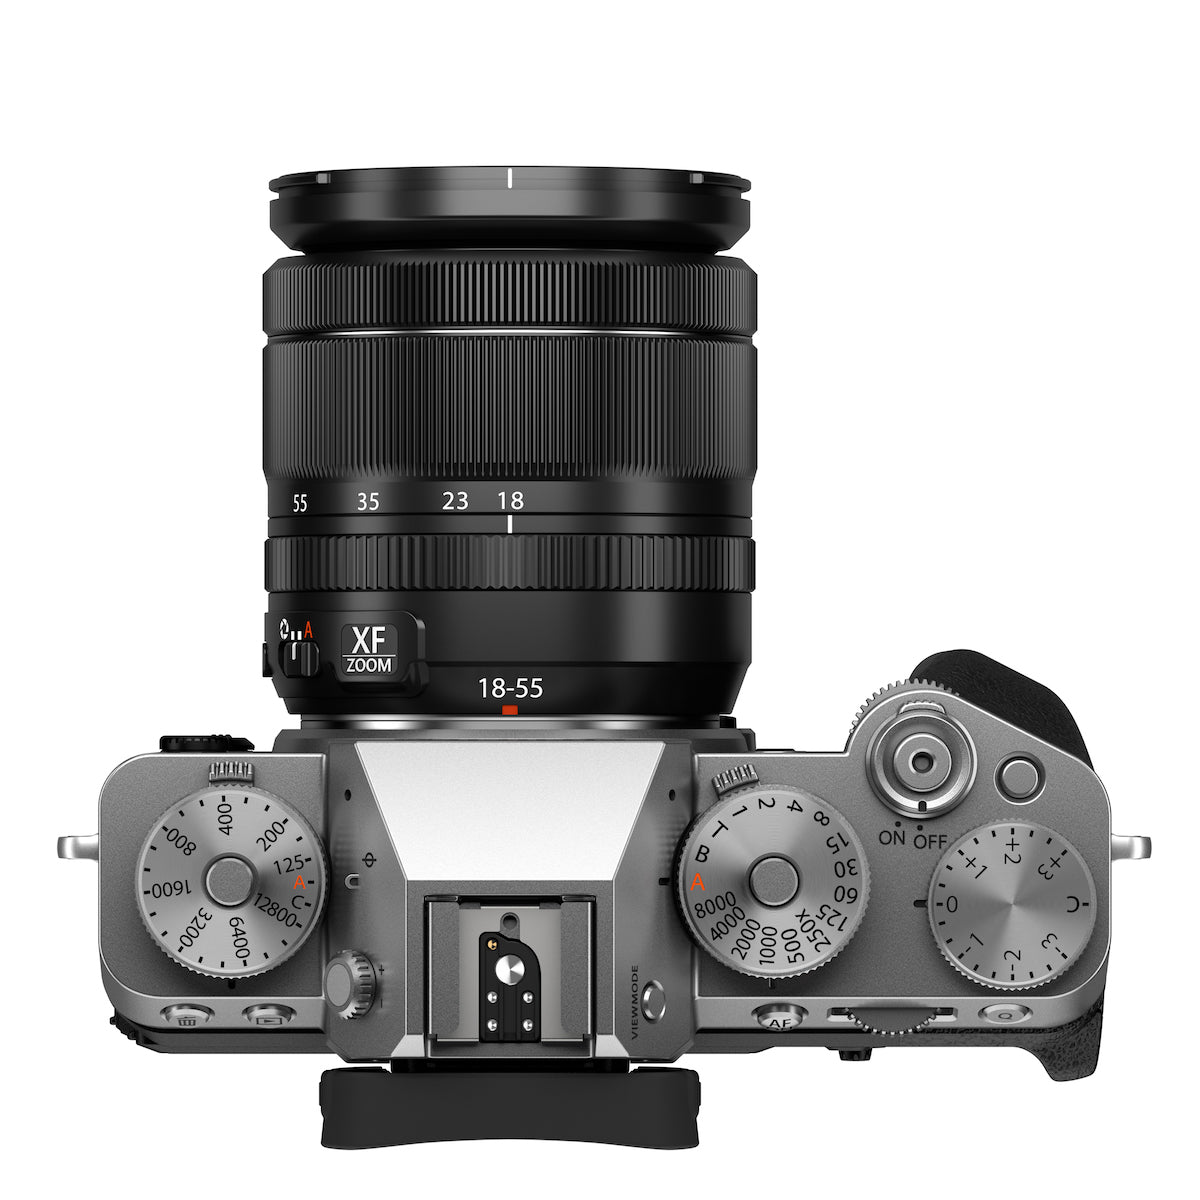 Fujifilm X-T5 Digital Camera w/18-55mm Lens Kit (Silver)